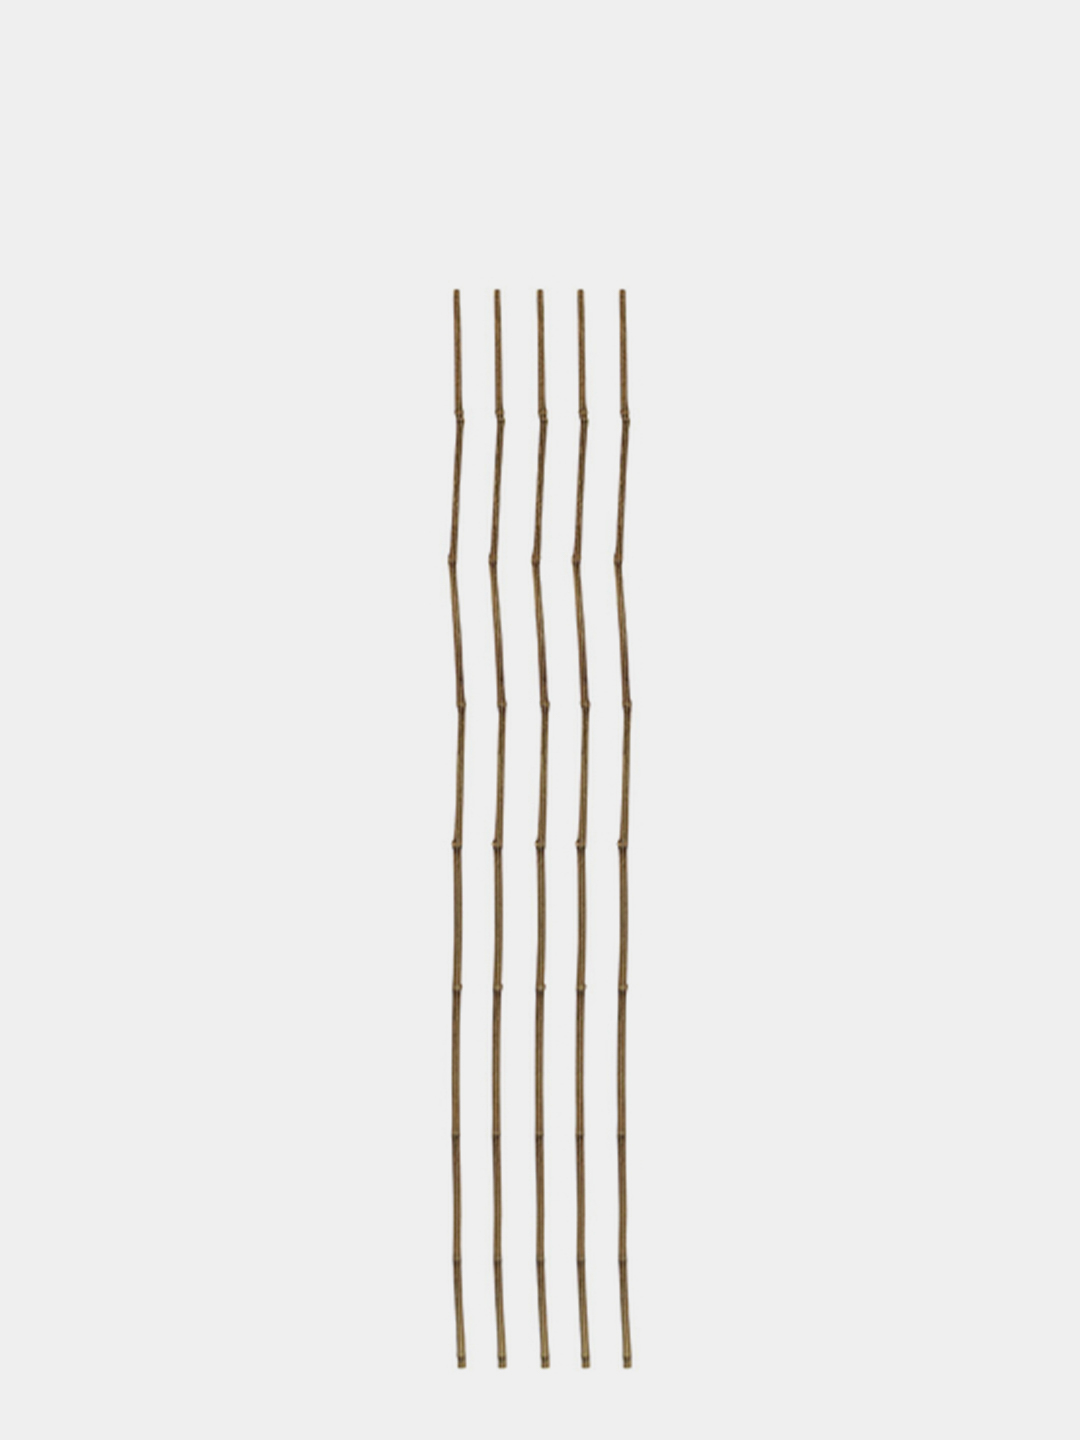  бамбуковая для растений 120 см, 5 штук за 113 ₽  в интернет .